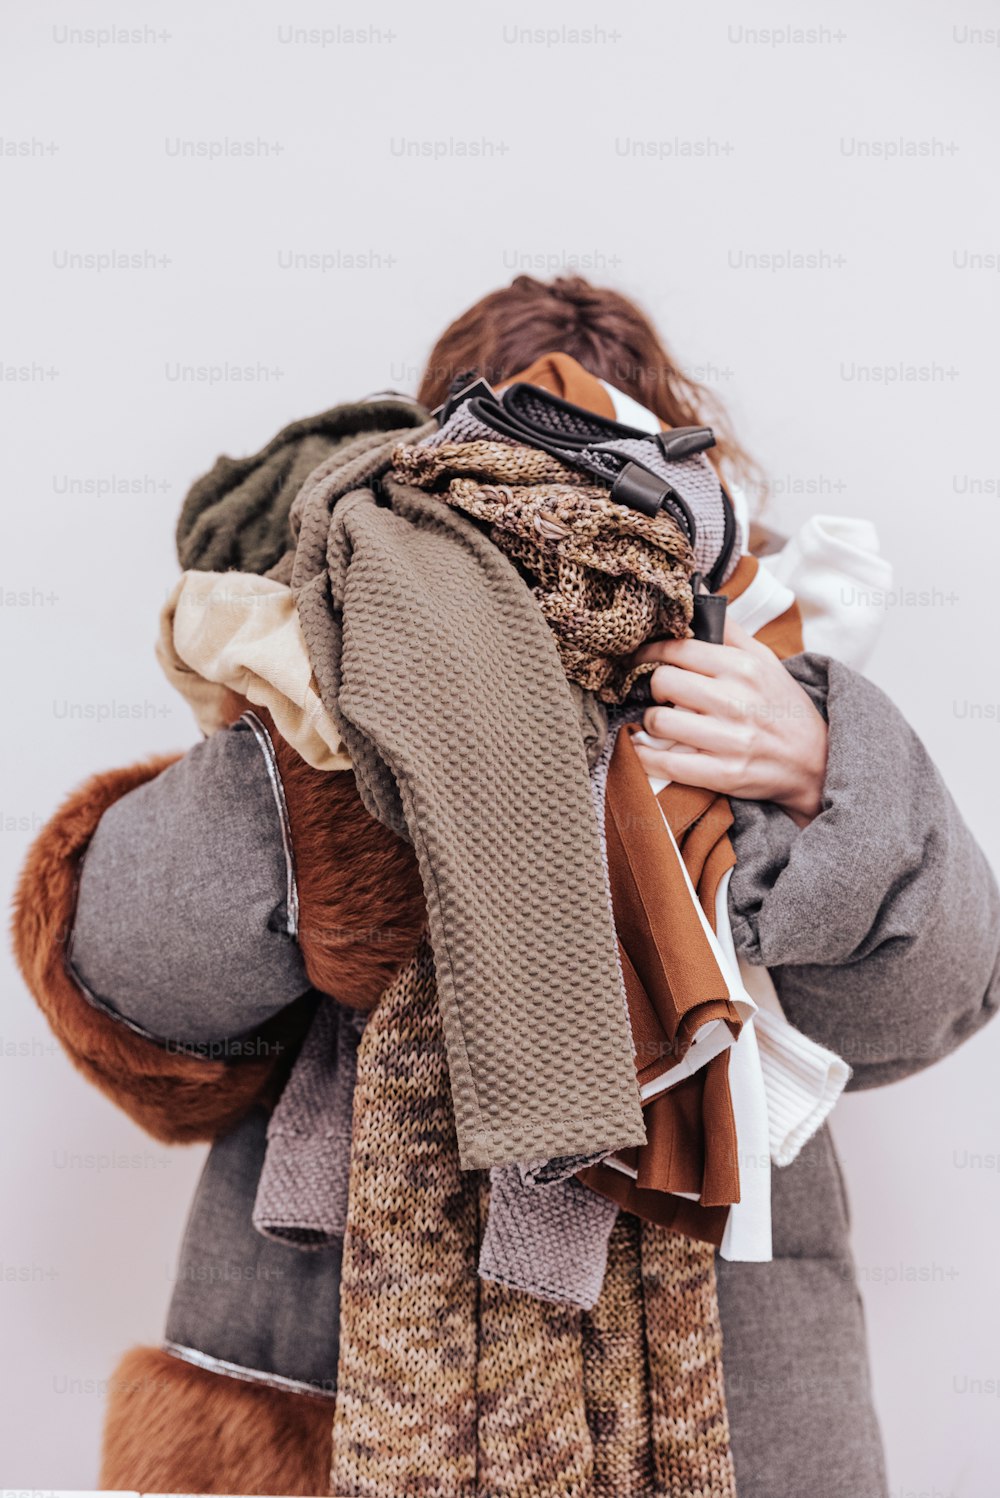 Une femme tient une pile d’écharpes